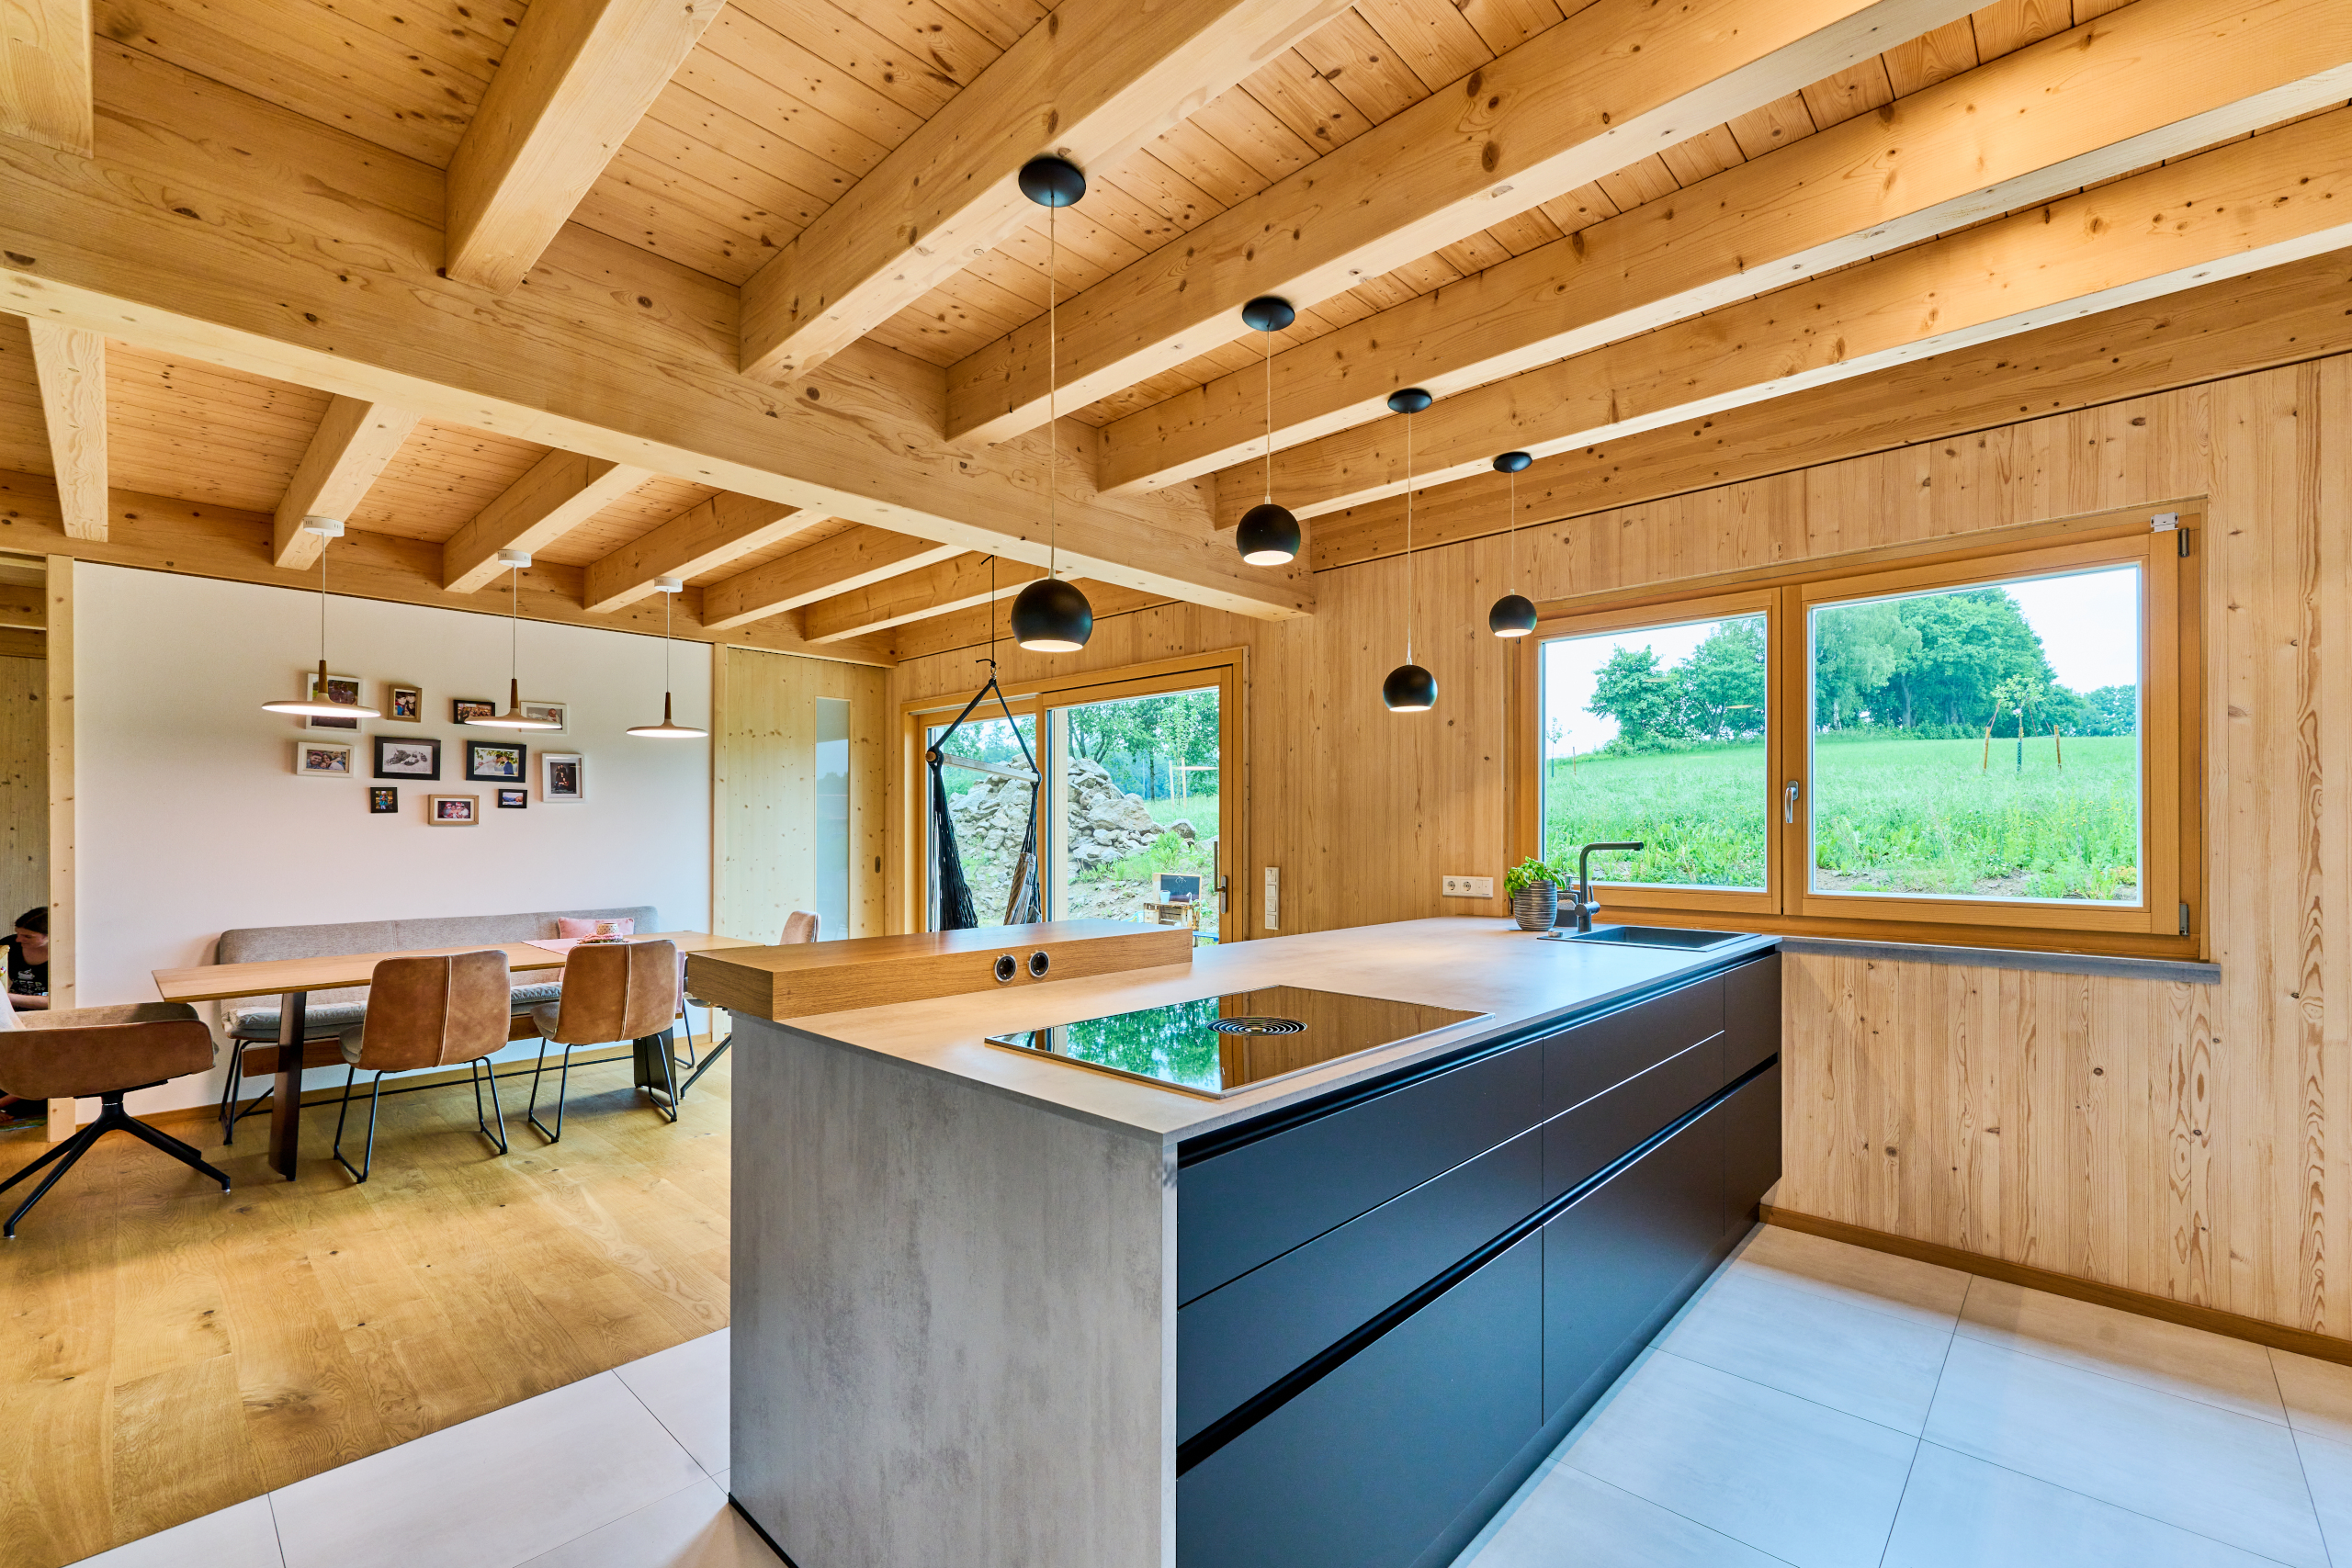 Küchenblock und Essbereich mit Holzbalkendecke und Dübelholzwänden